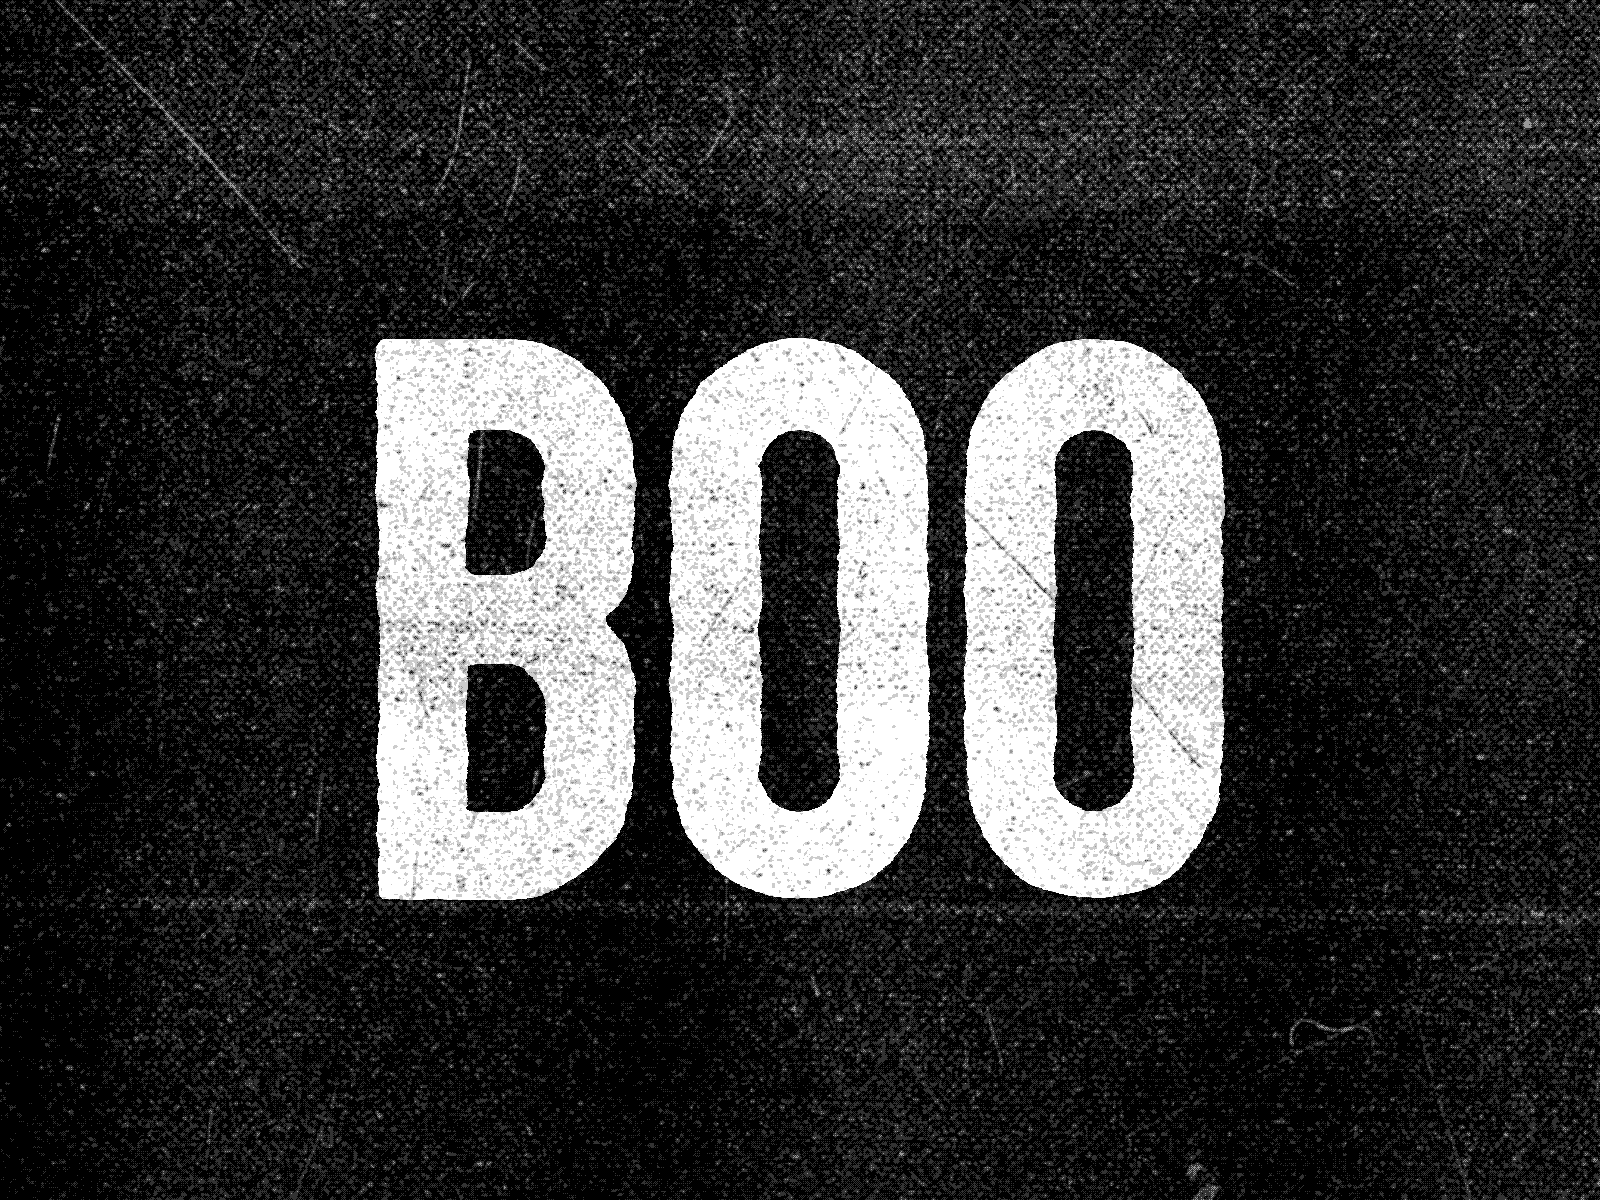 Grafx Design & Digital Agency, Tampa Bay, Florida » Boo at the Zoo Logo